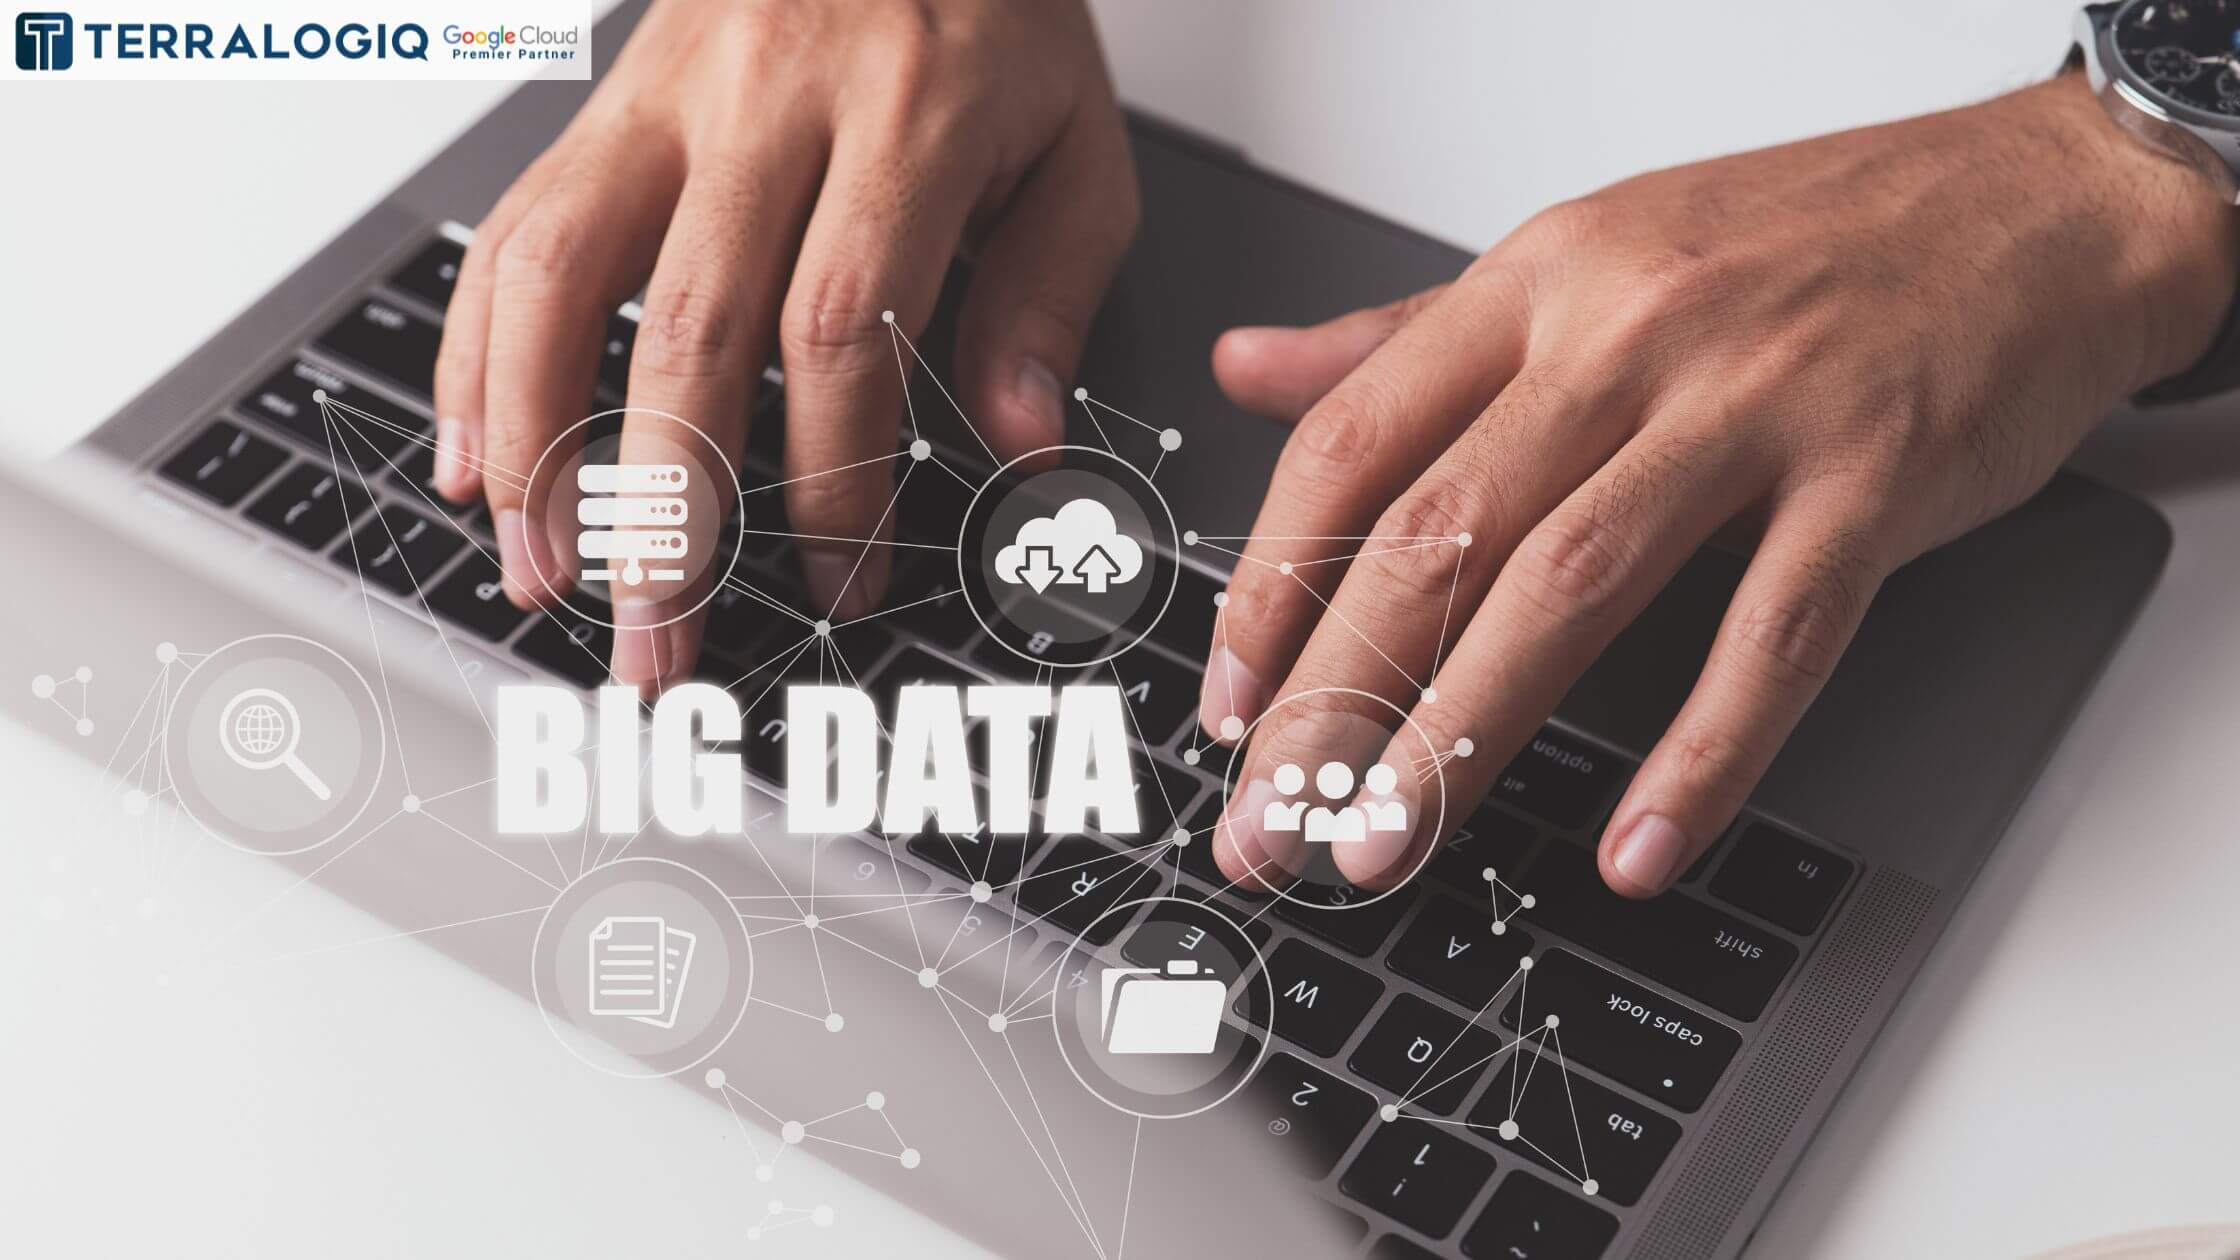 Big Data Implementation: Solusi Cerdas Mengembangkan Bisnis